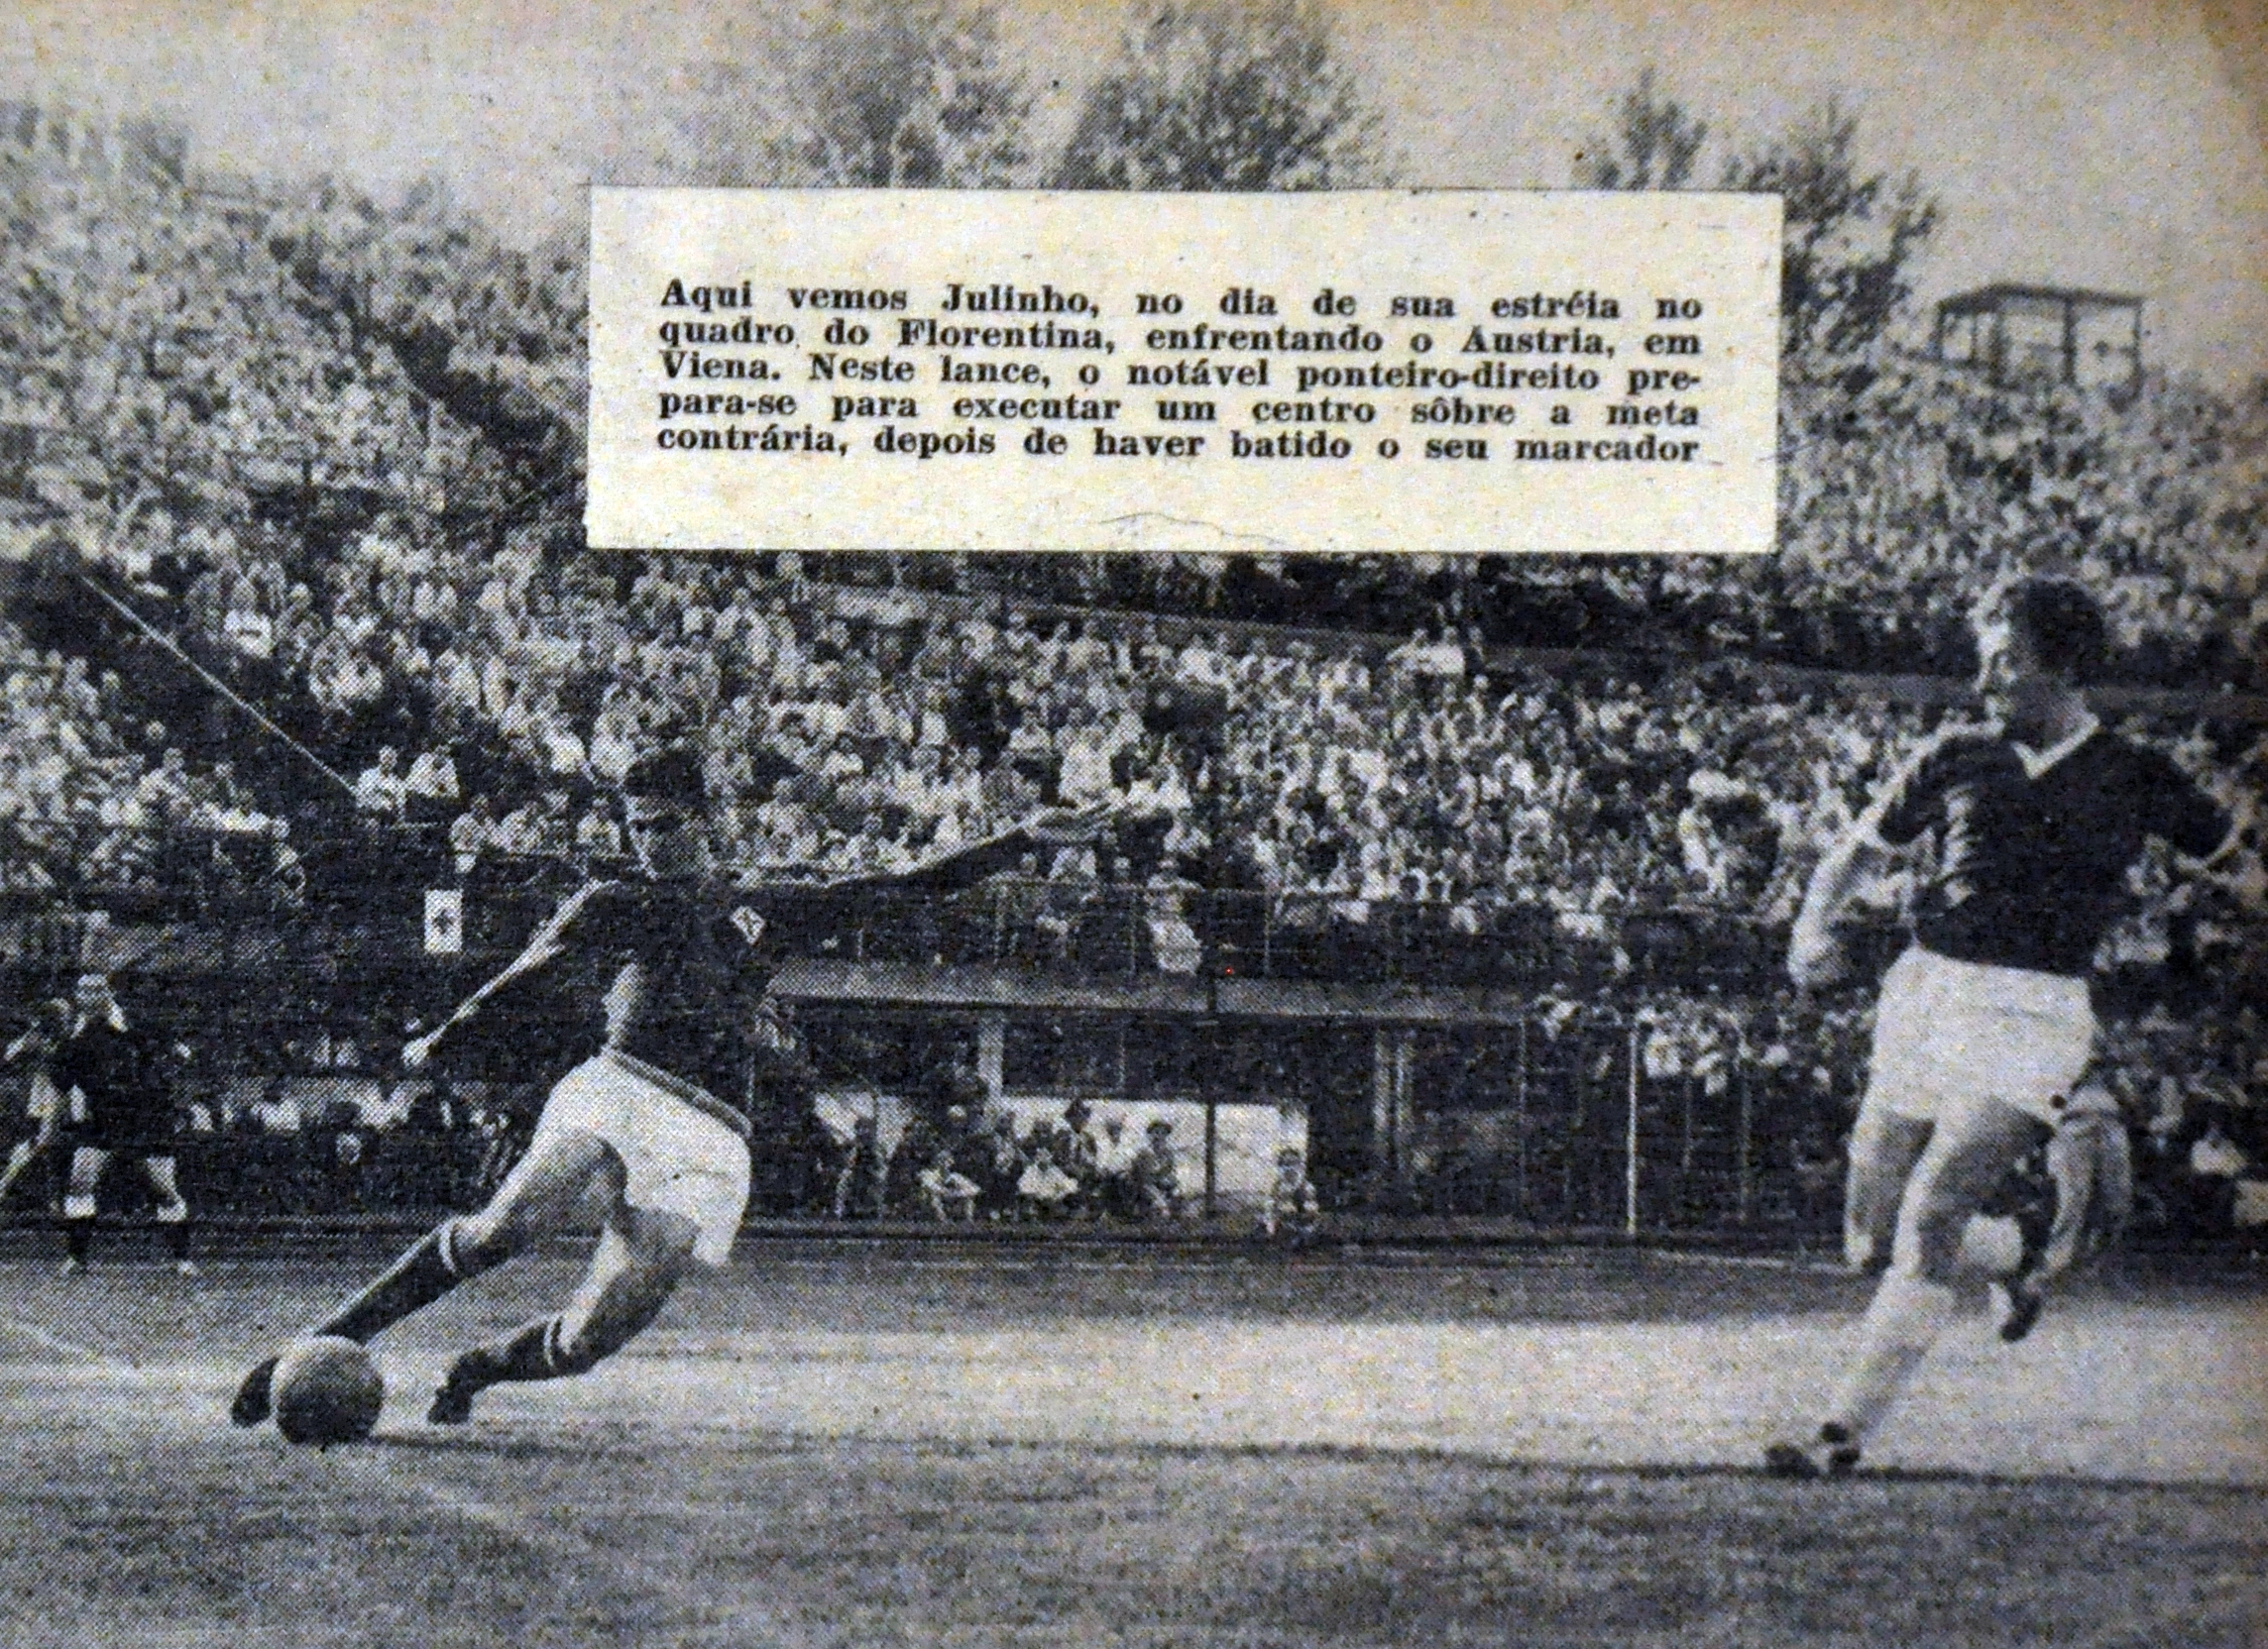 Estreia de Julinho Botelho (fazendo o arremate) no futebol italiano pela Fiorentina, em 1955. Foto: Reprodução da revista Esporte Ilustrado